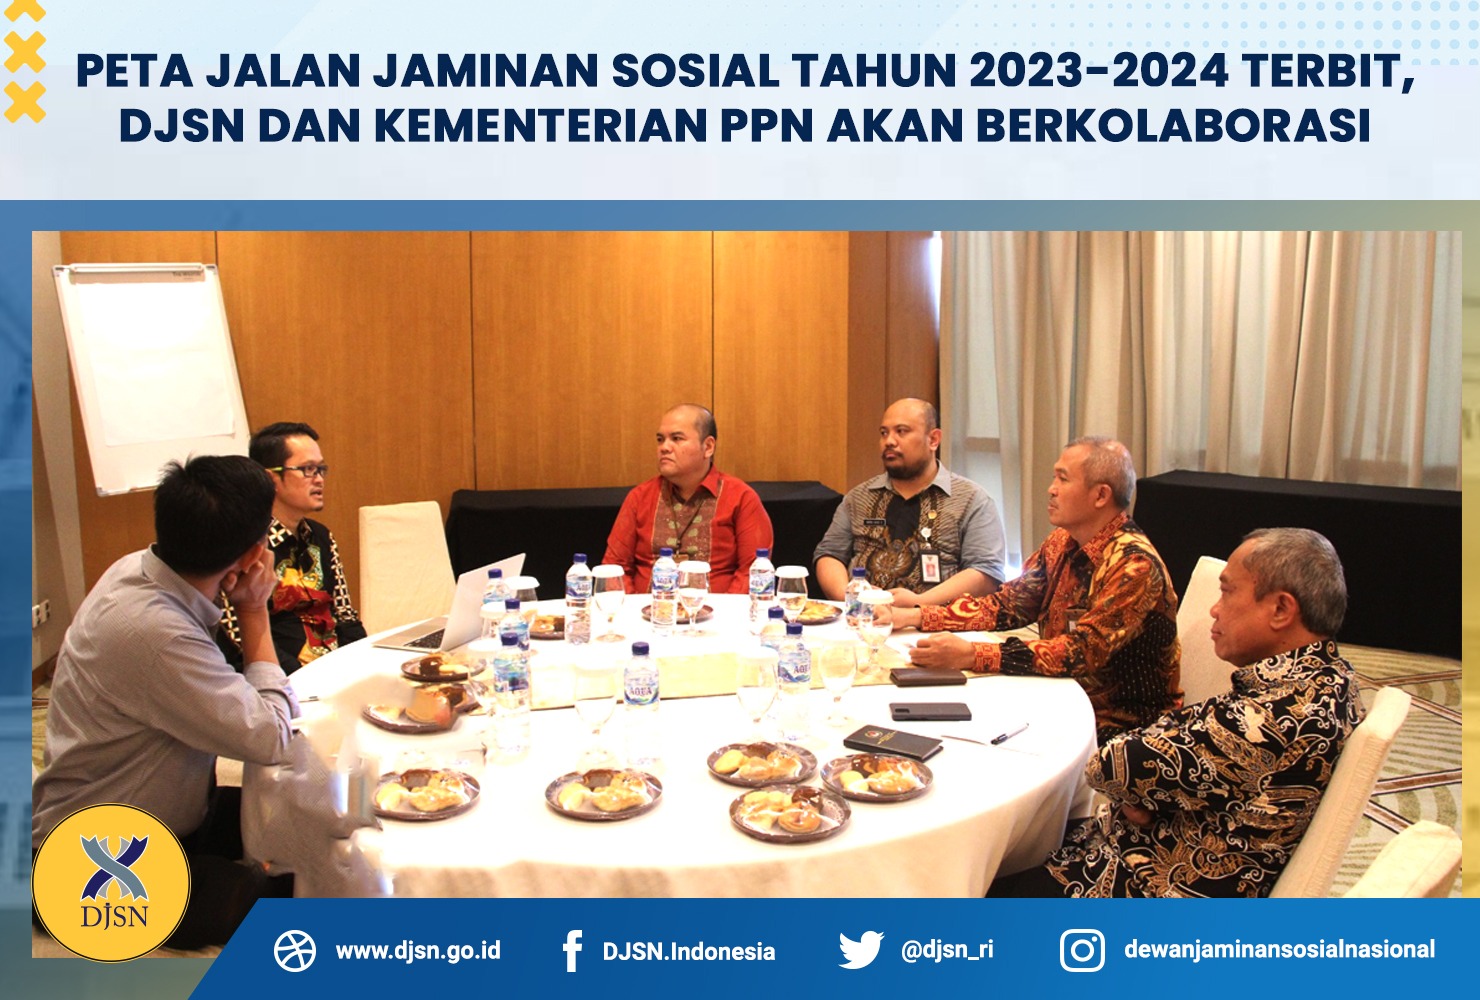 Peta Jalan Jaminan Sosial Tahun 2023-2024 Terbit, DJSN dan Kementerian PPN akan Berkolaborasi